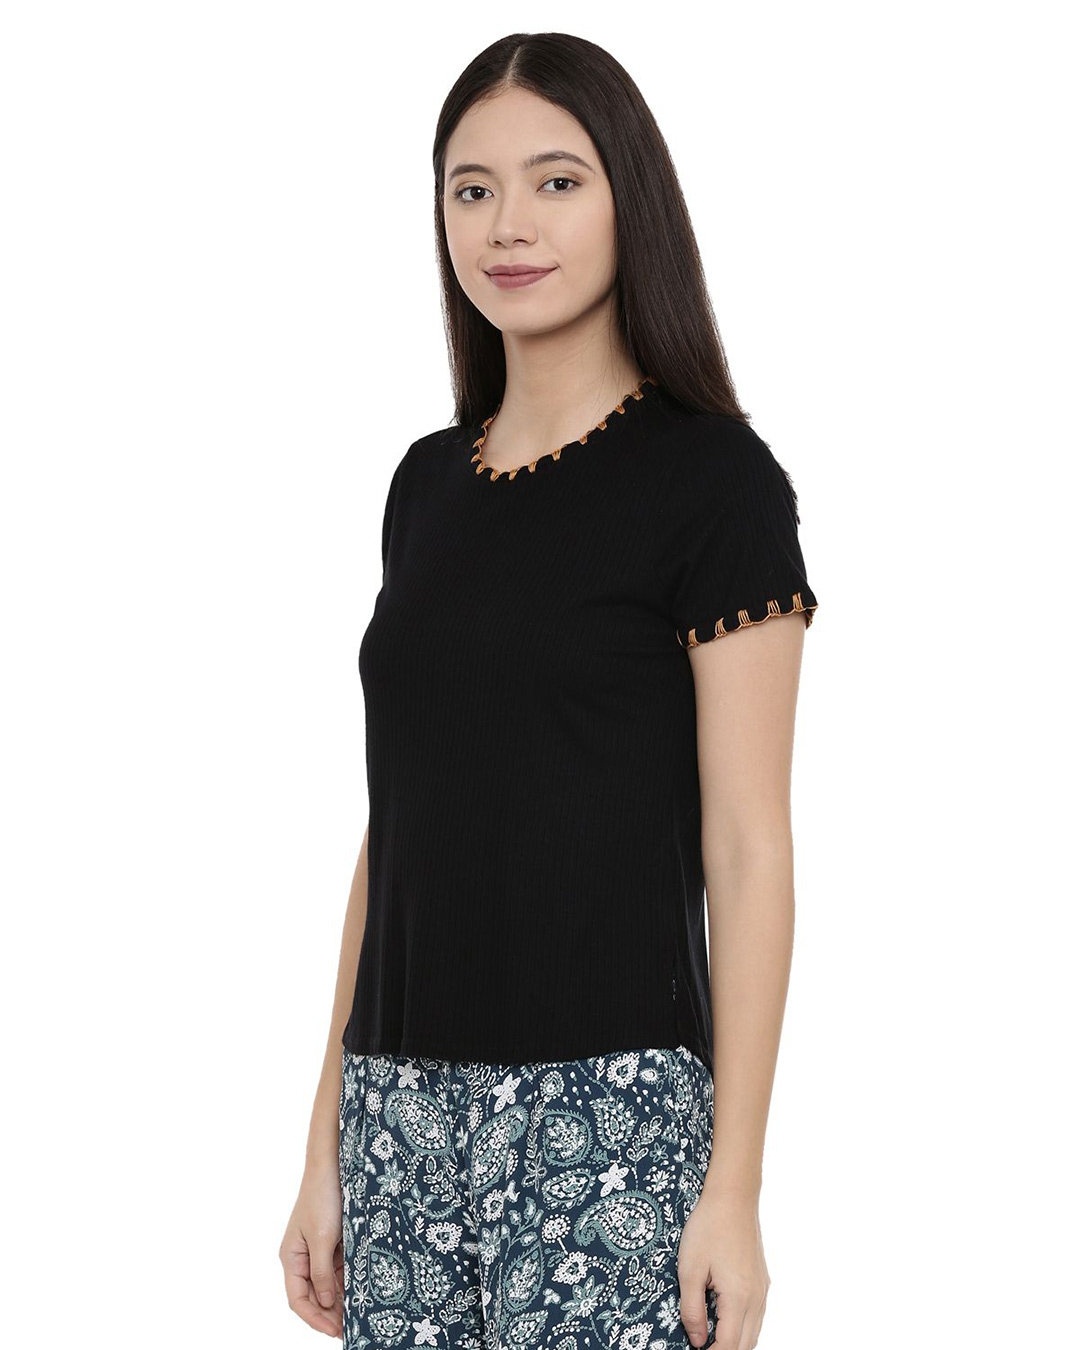 Shop Women's Black Abstract Half Sleeve Top-Design